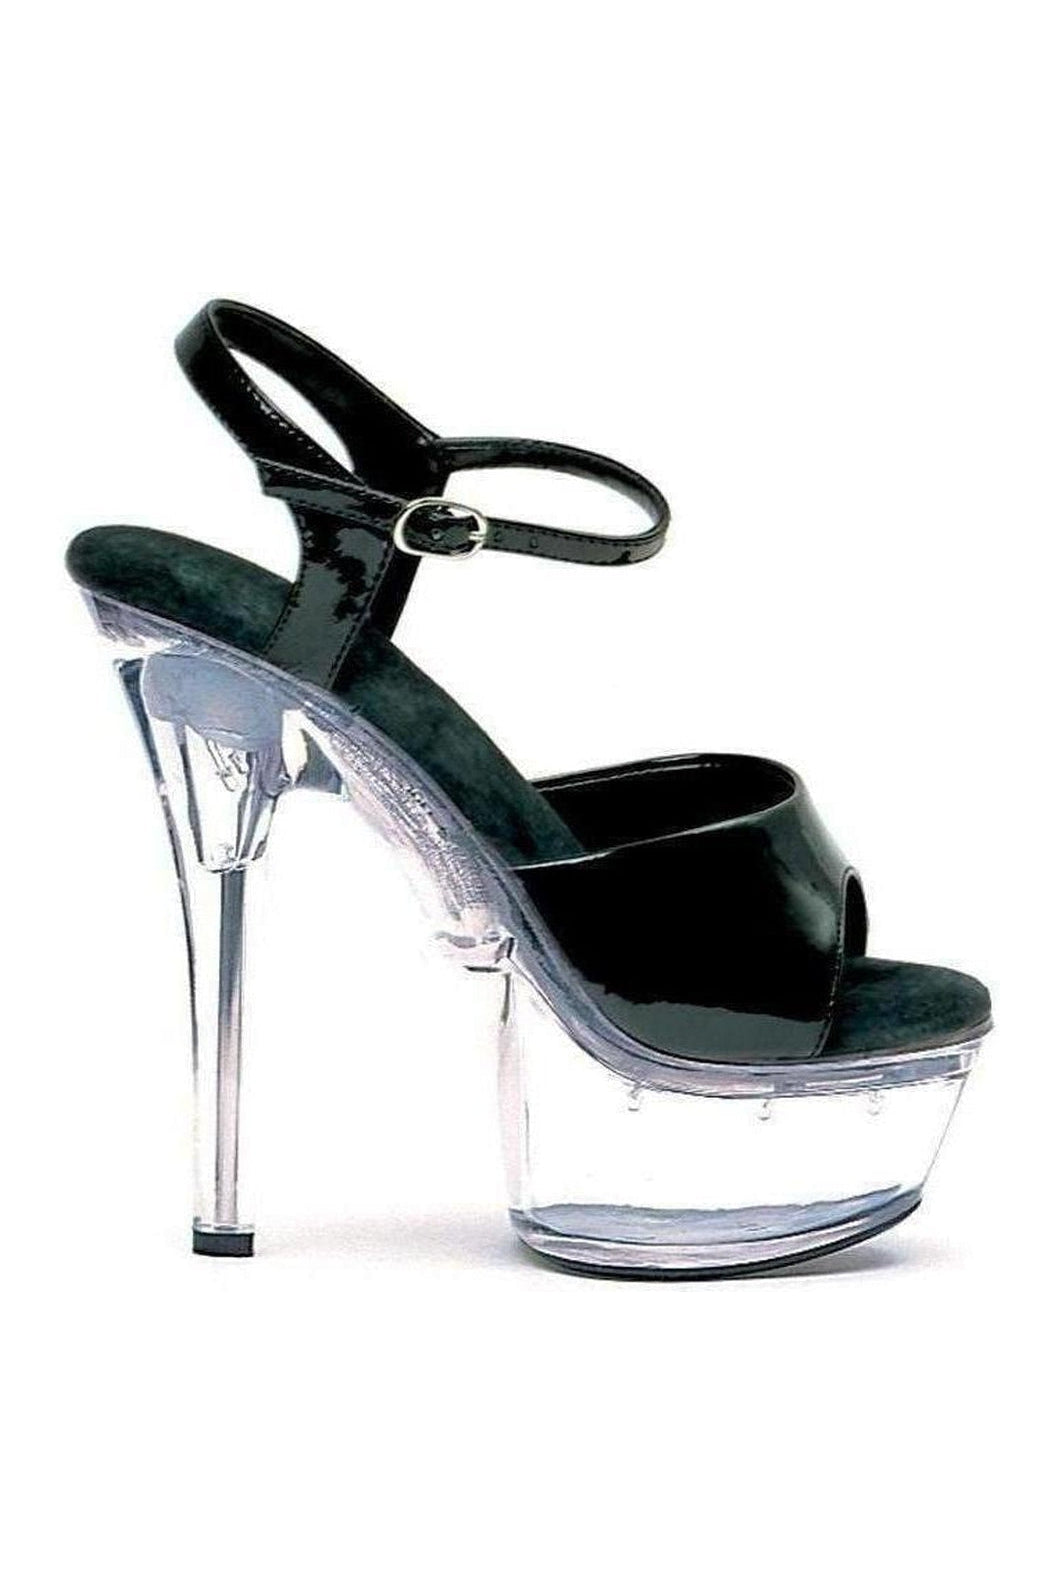 609-JULIET Platform Sandal | Black Patent-Ellie Shoes-Black-Sandals-SEXYSHOES.COM